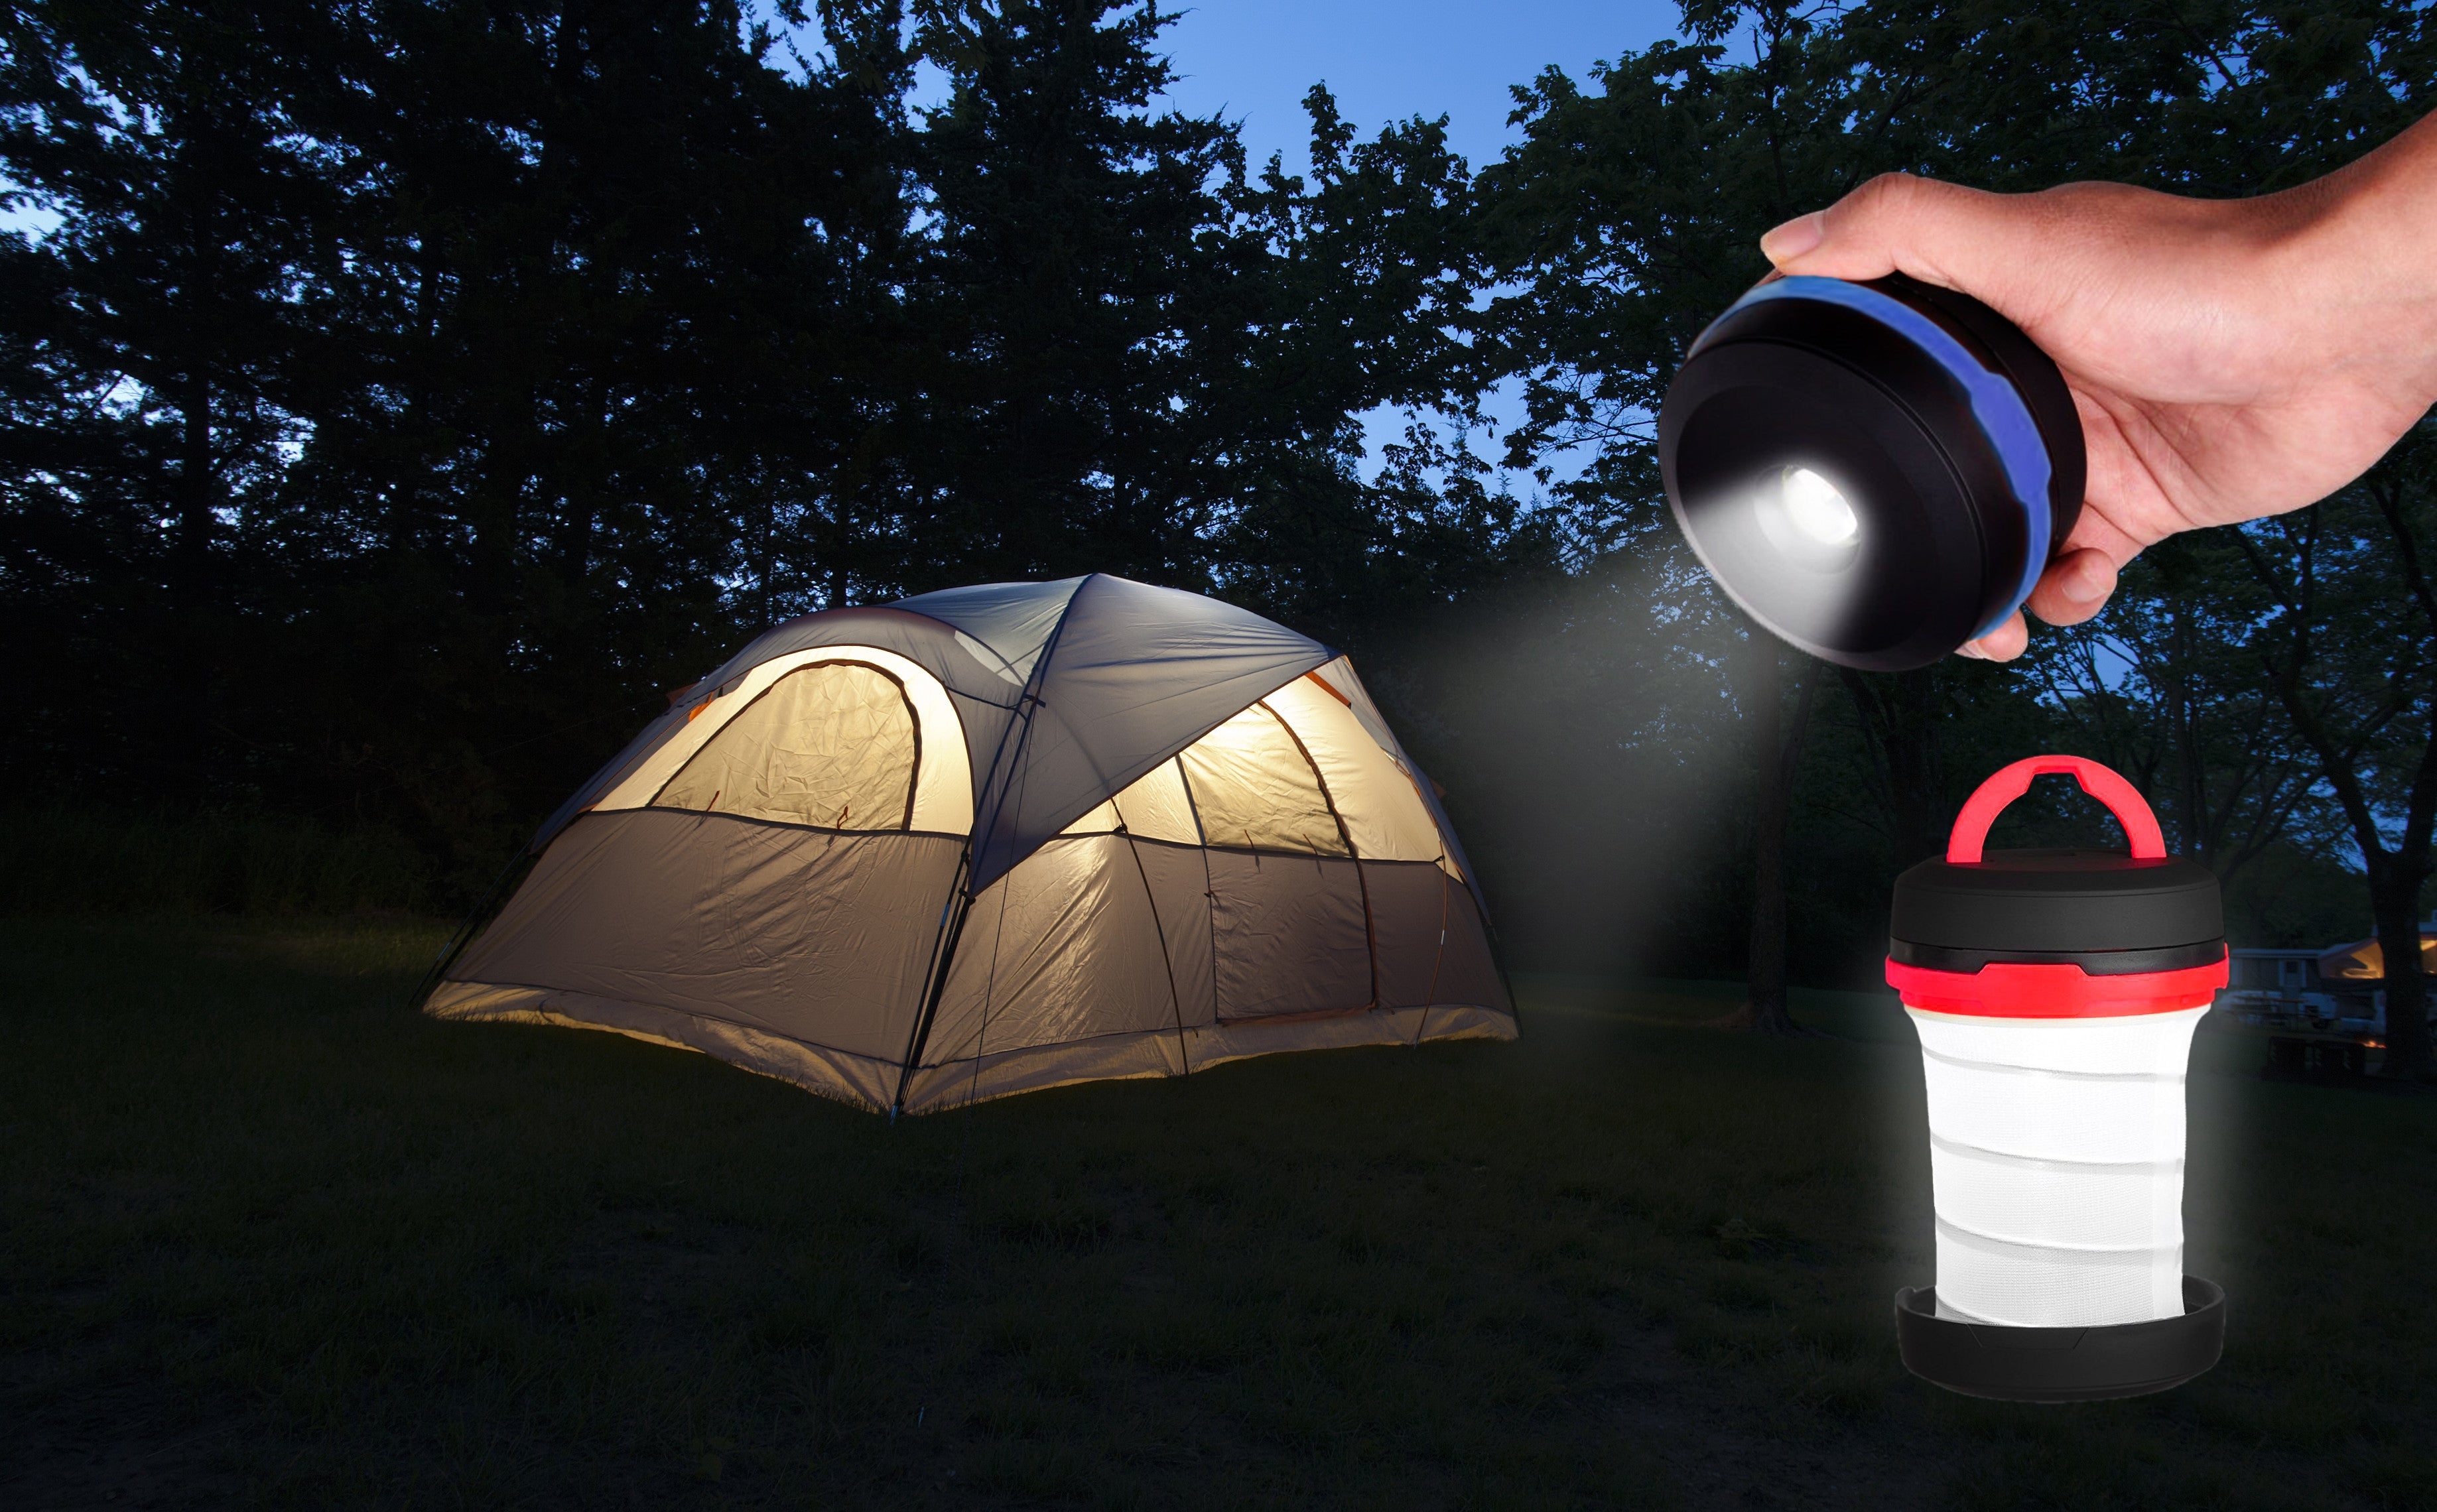 Kingavon 1W Expanding Camping Lantern